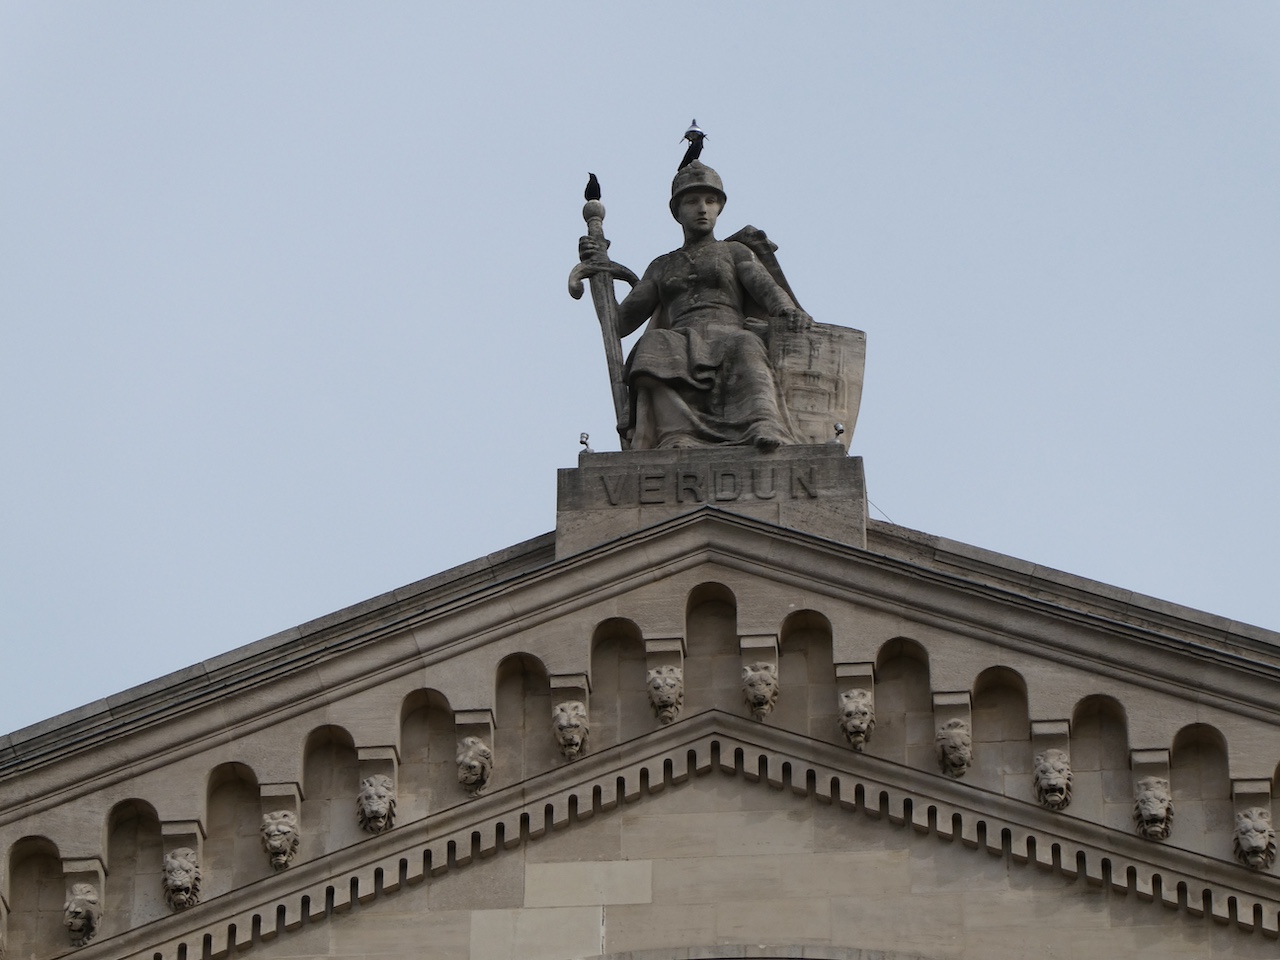 La statue de Verdun, avec deux oiseaux et un paratonnerre radioactif